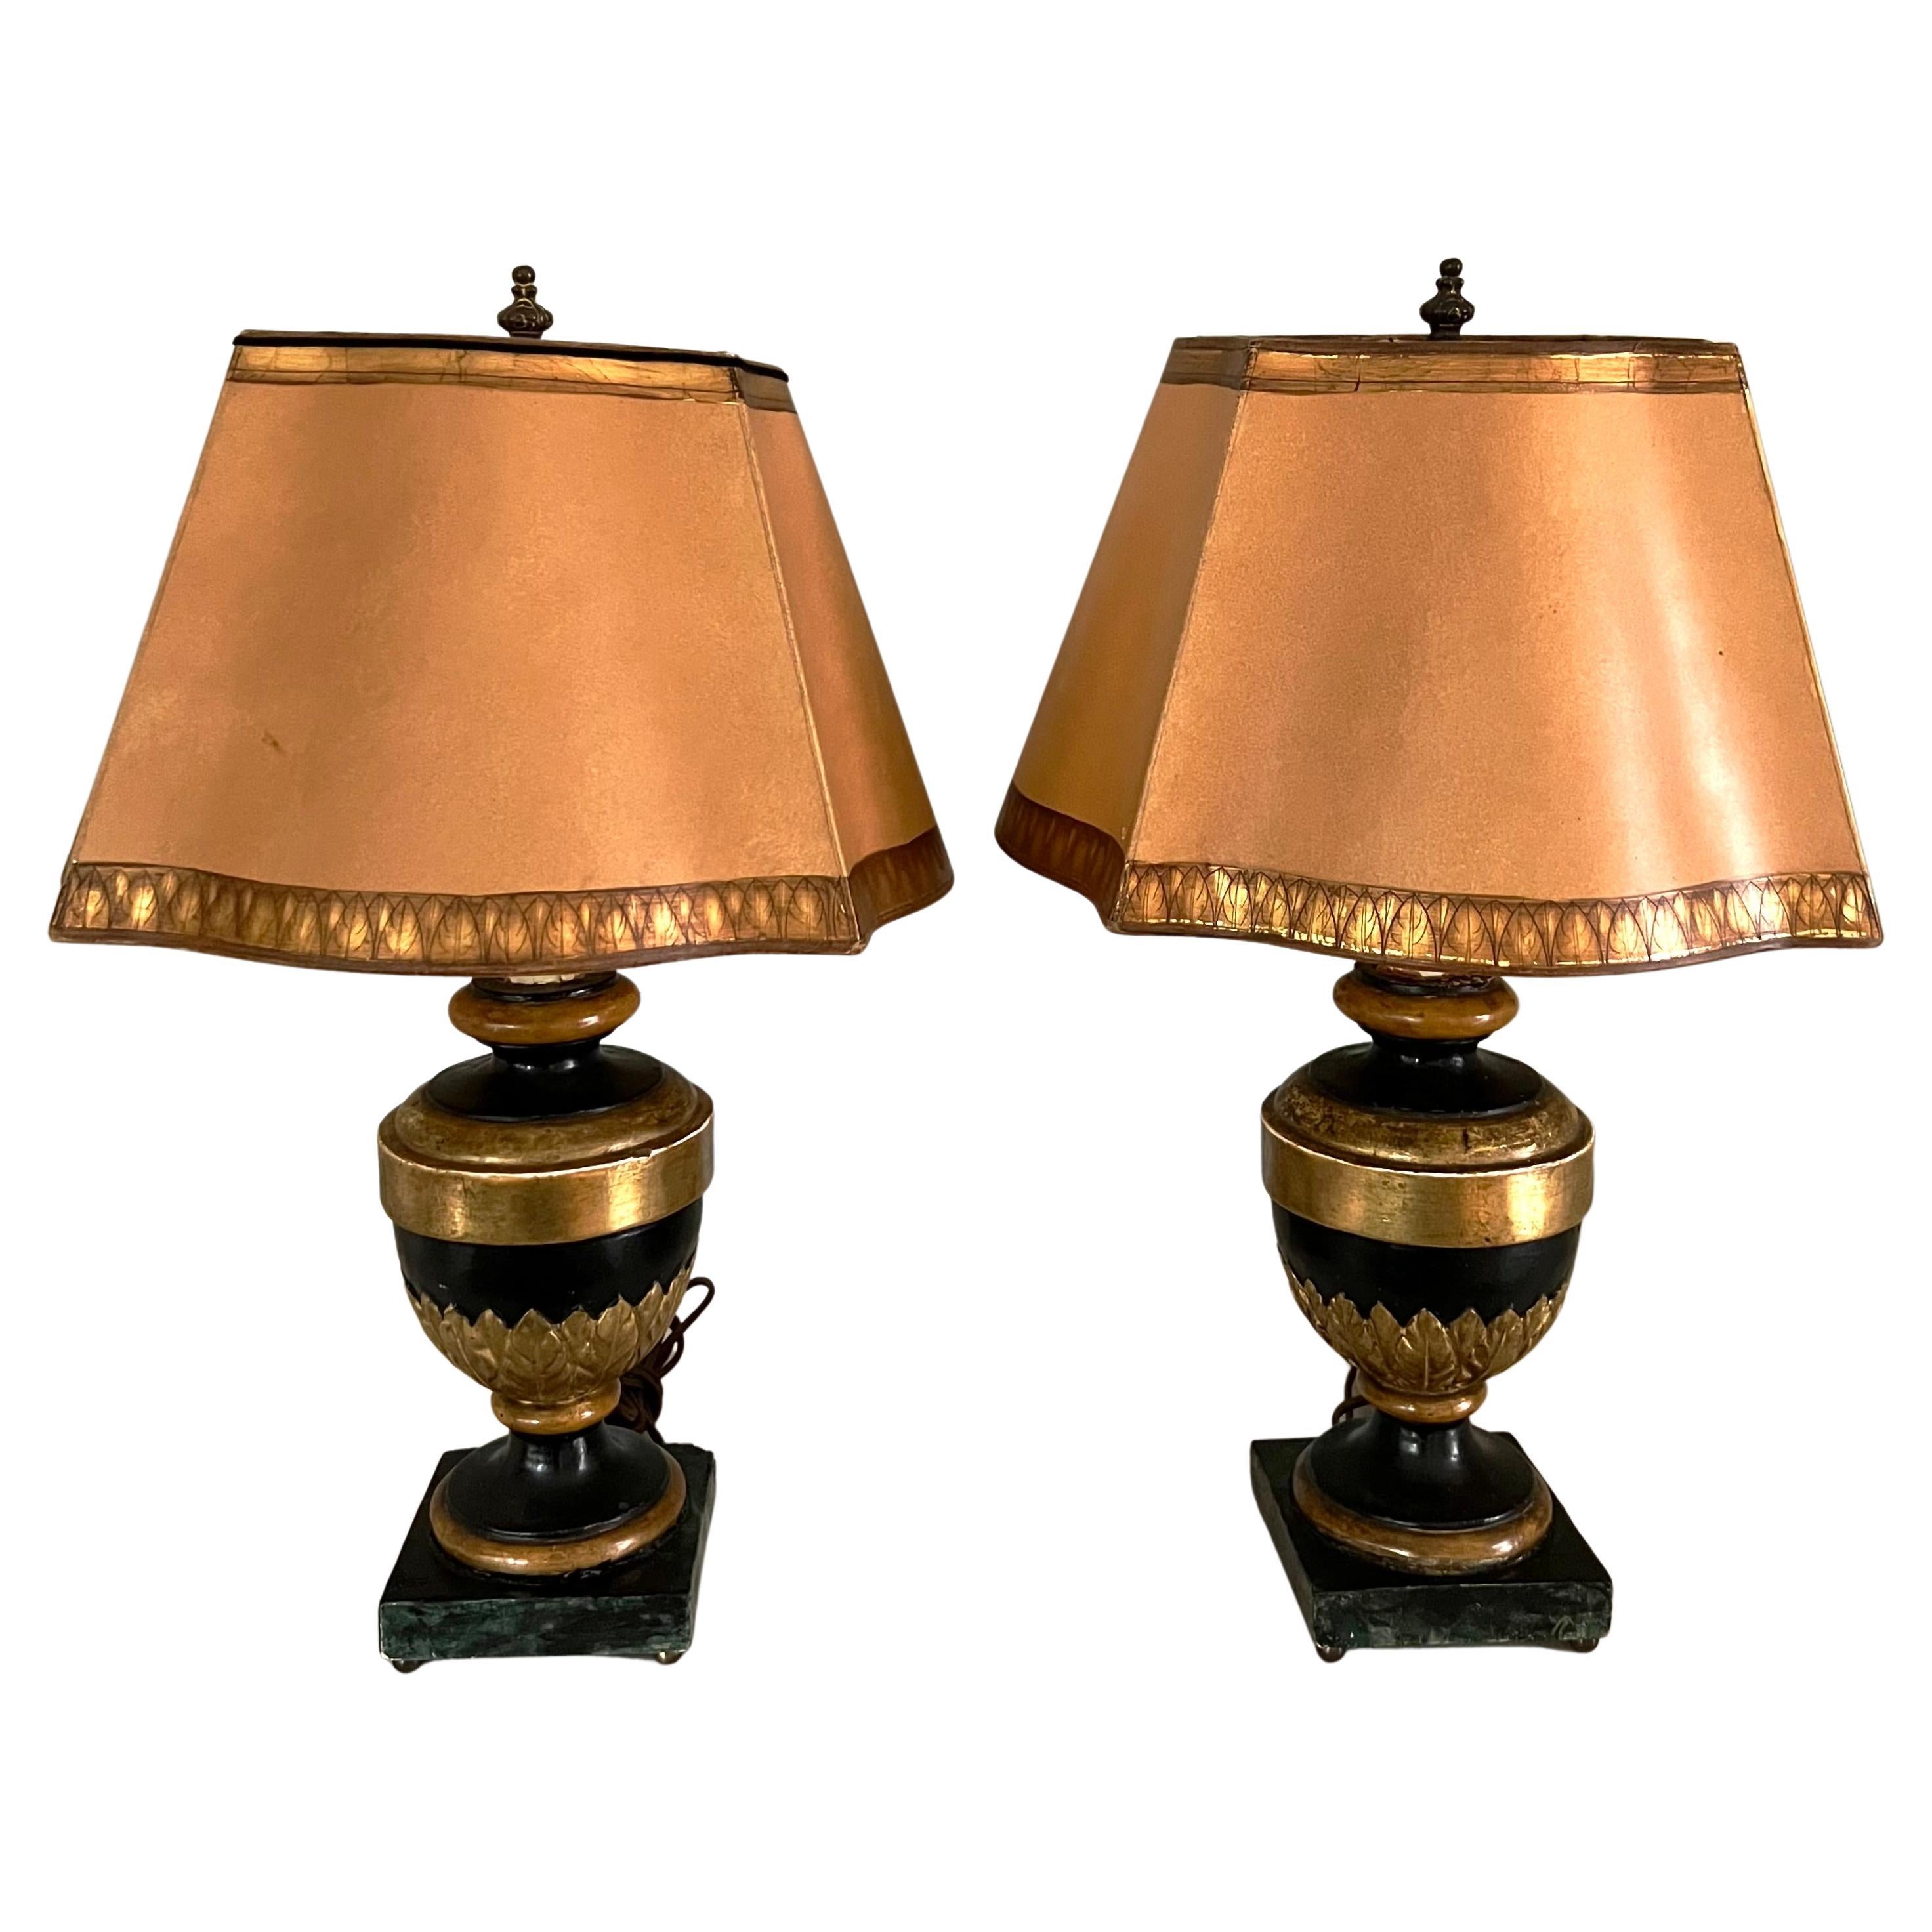 Paire de lampes en bois sculpté doré et faux marbre avec abat-jours dorés assortis